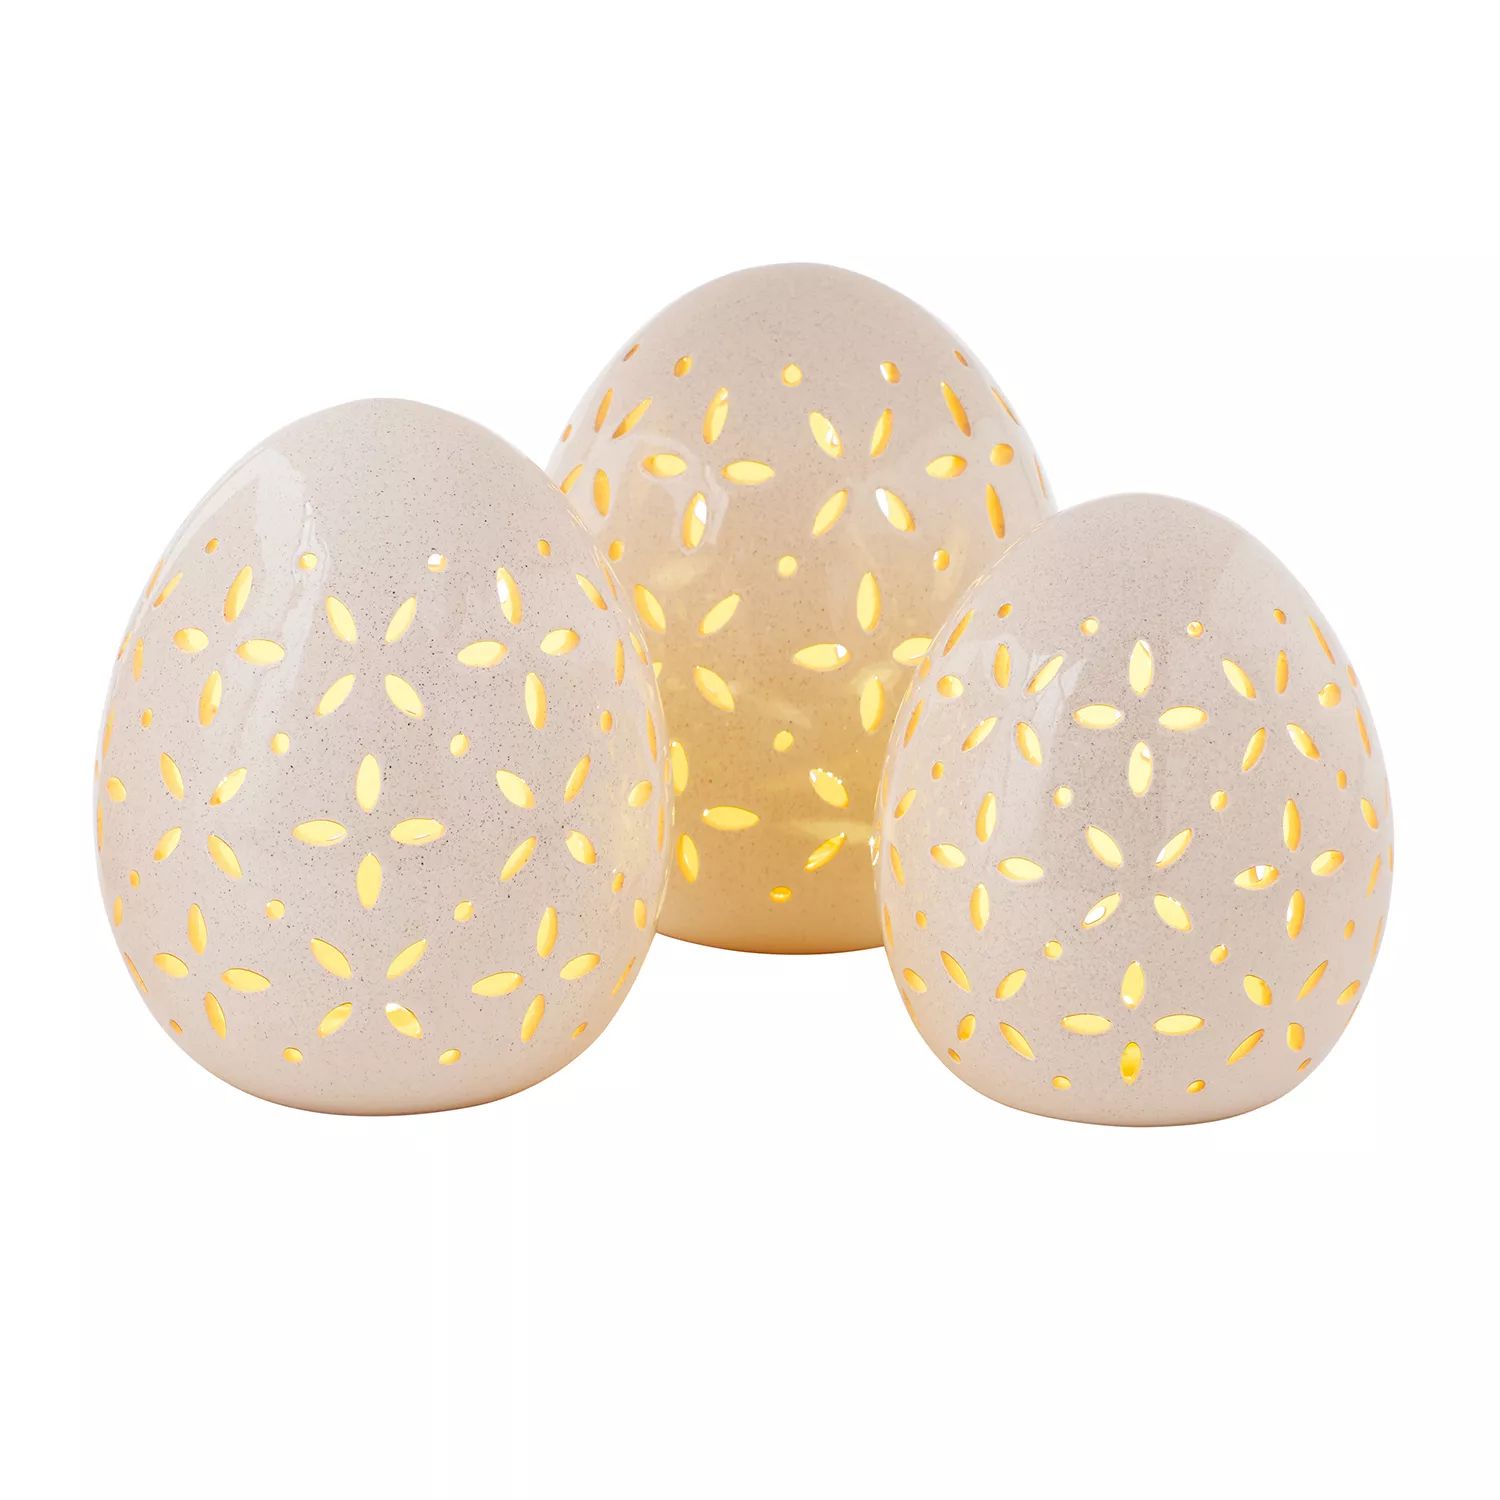 Member's Mark Pre-Lit Set of 3 Ceramic Easter Eggs - White | Sam's Club